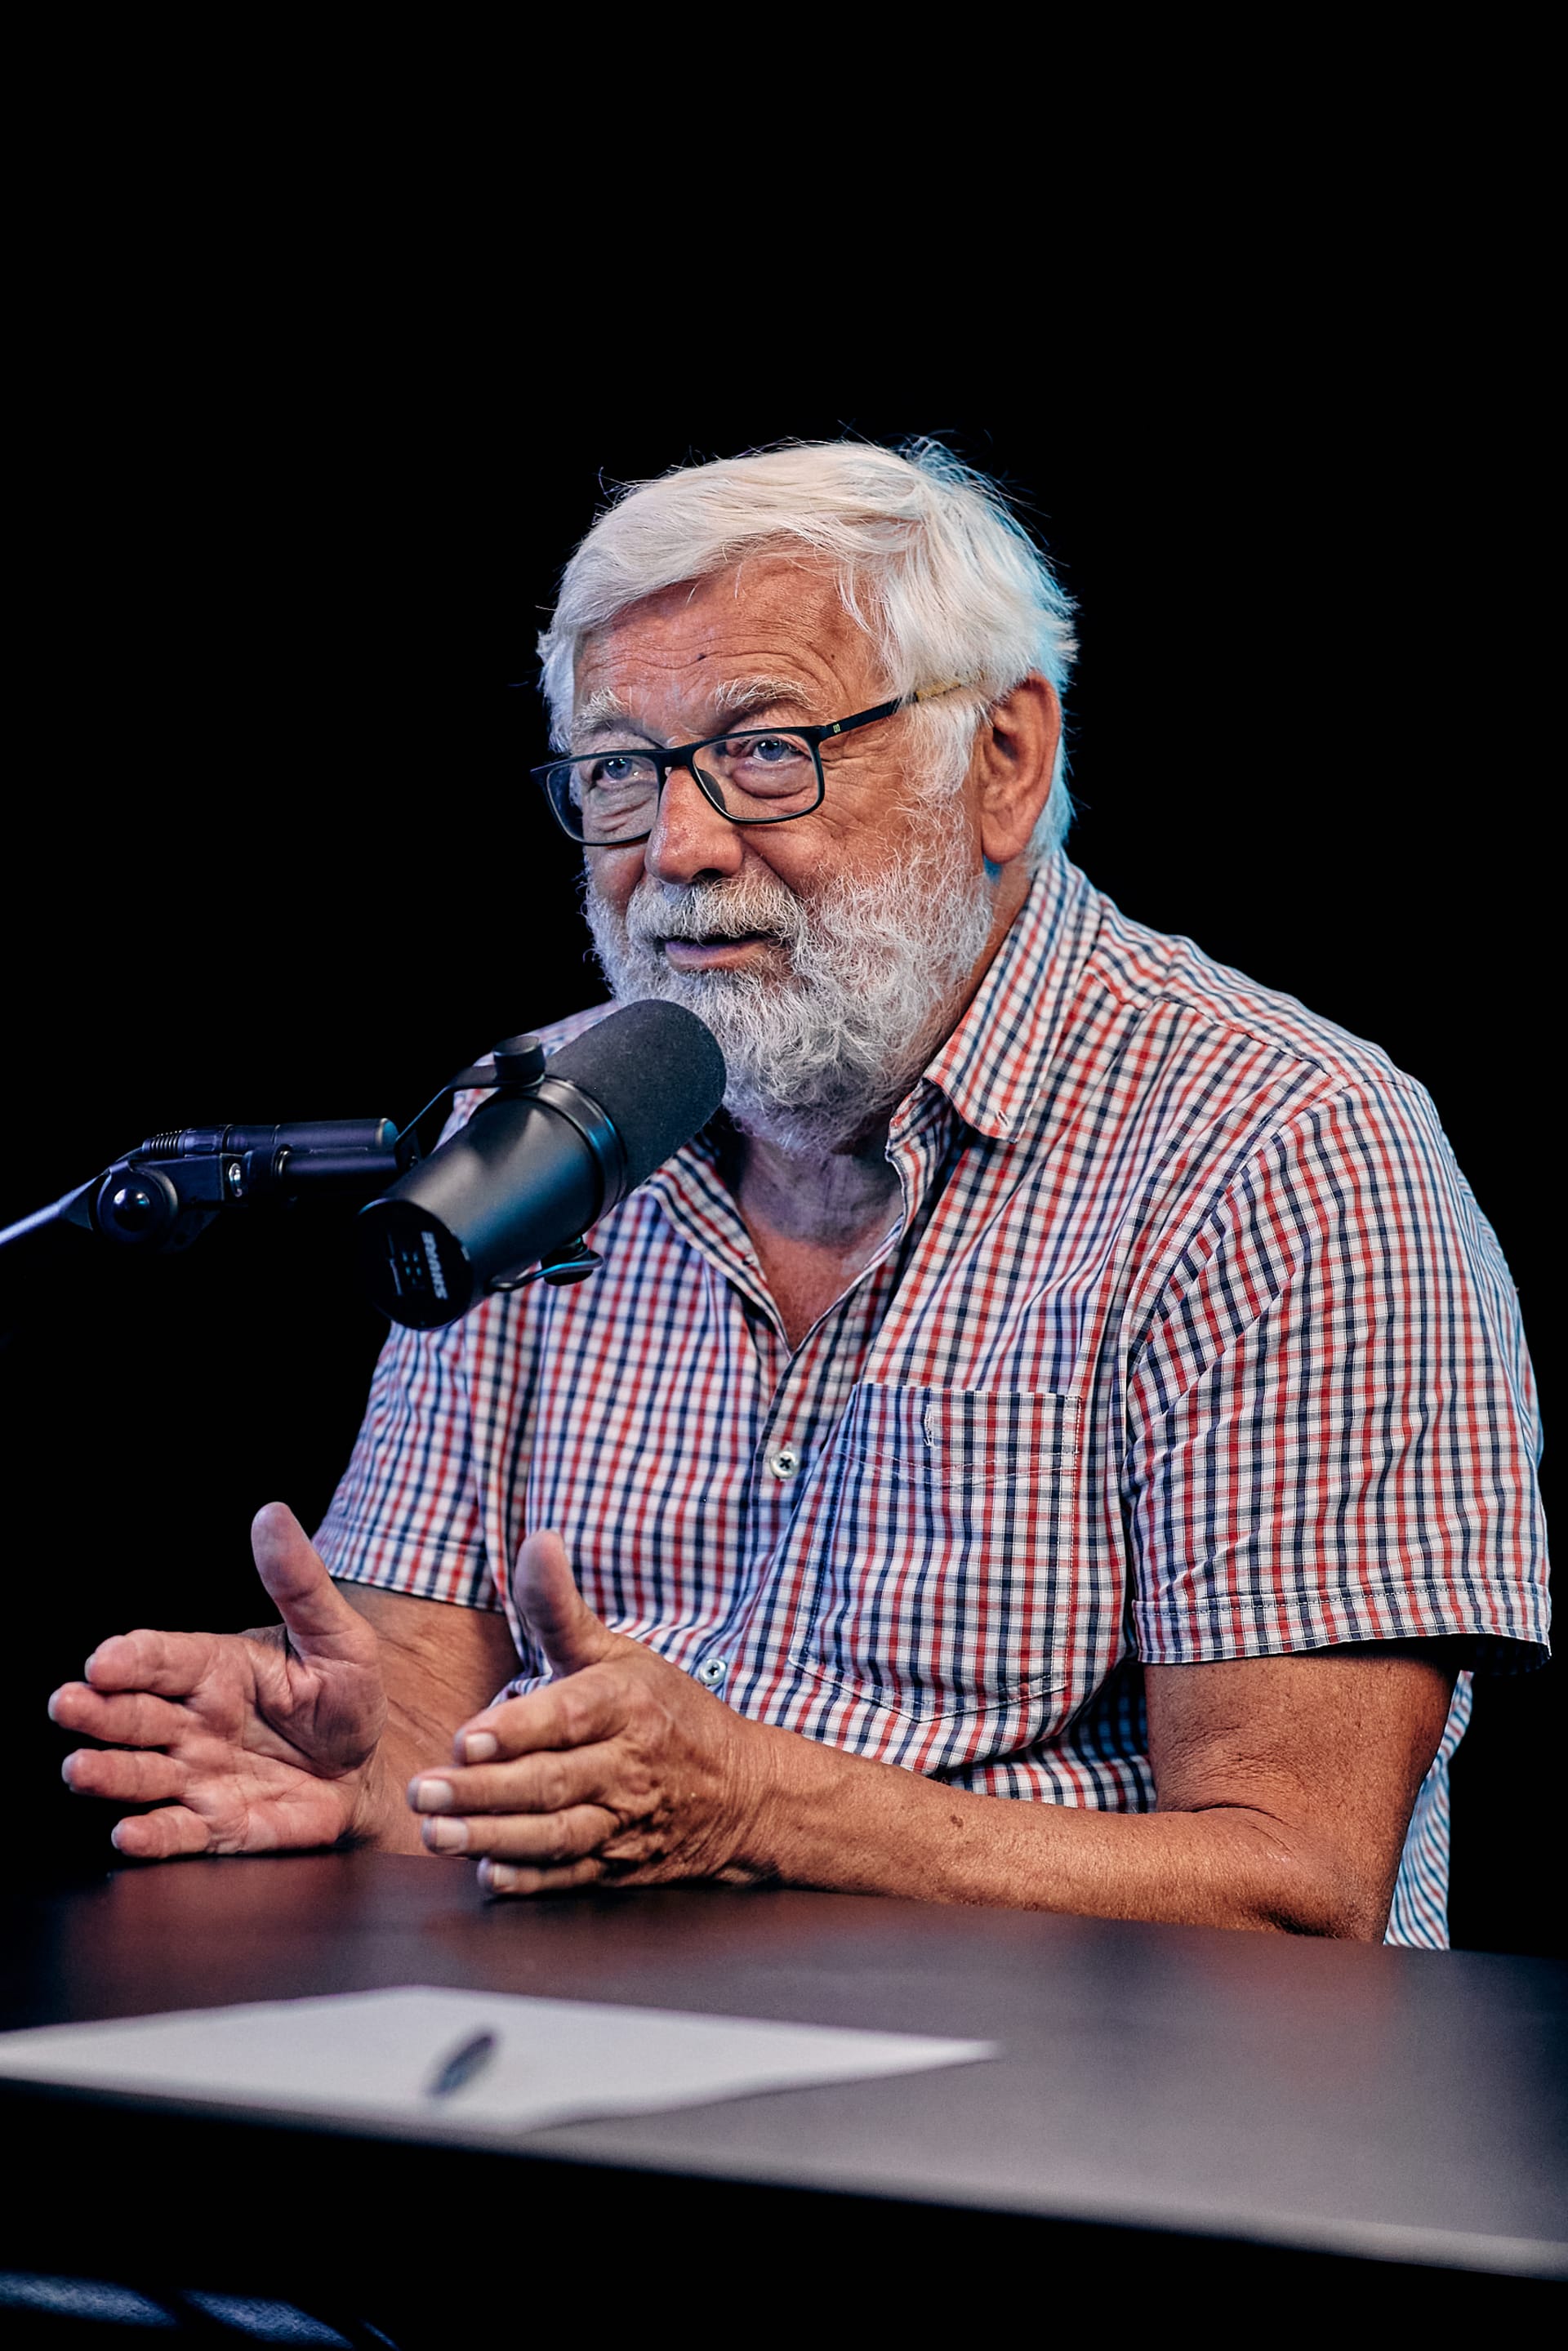 Novinář Josef Klíma byl hostem podcastu Fight Cast One.